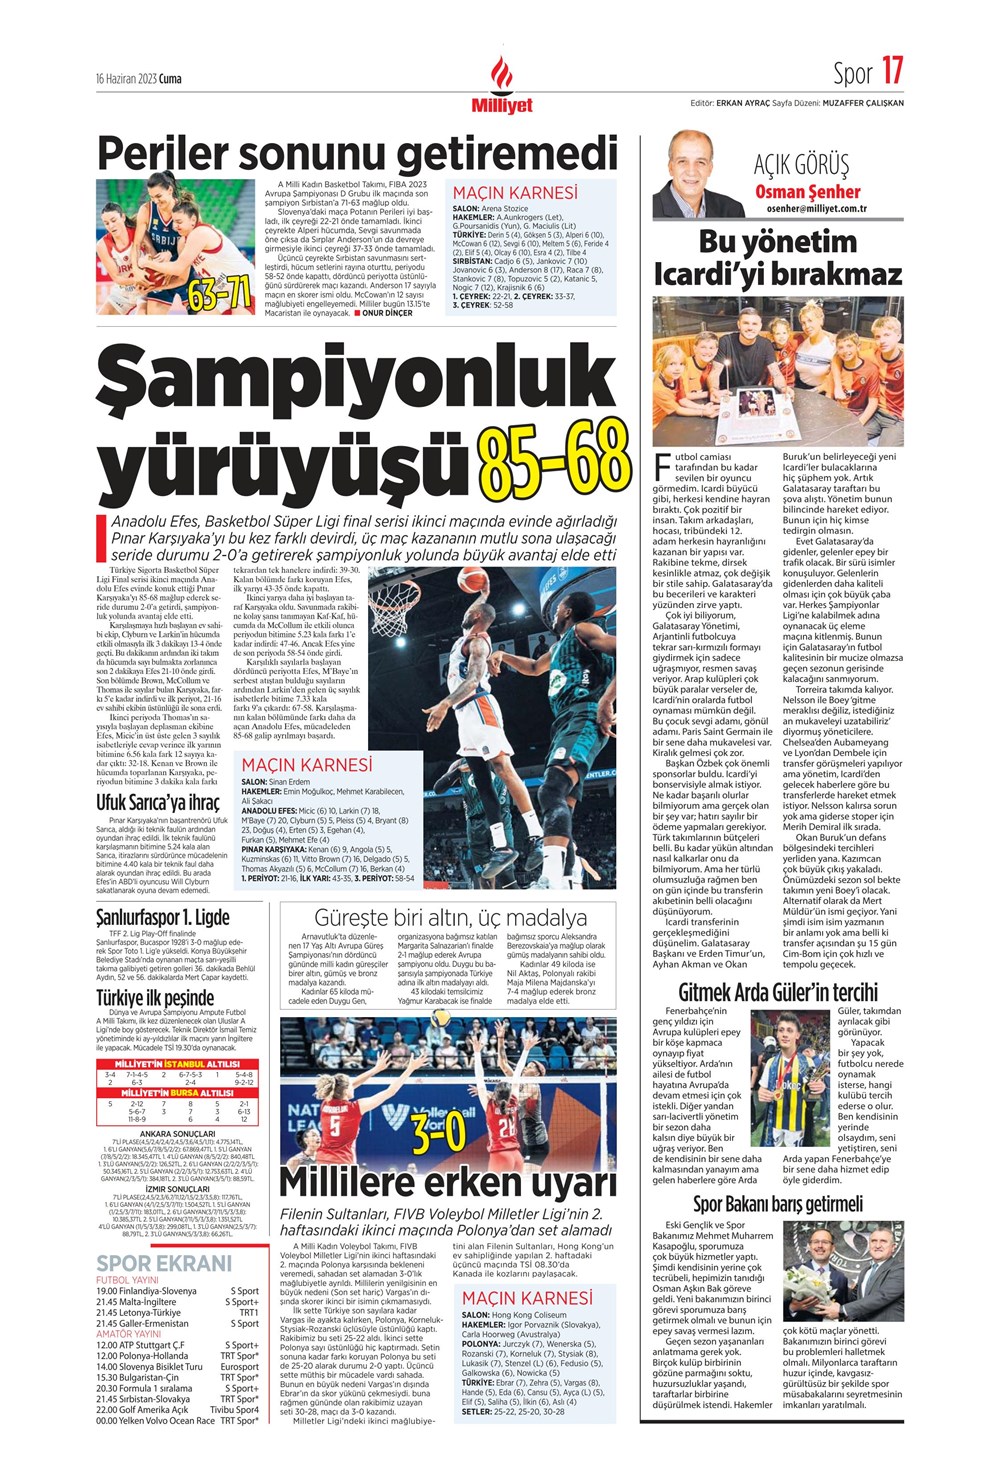 "Dzeko çok yakın" Sporun manşetleri (16 Haziran 2023)  - 19. Foto